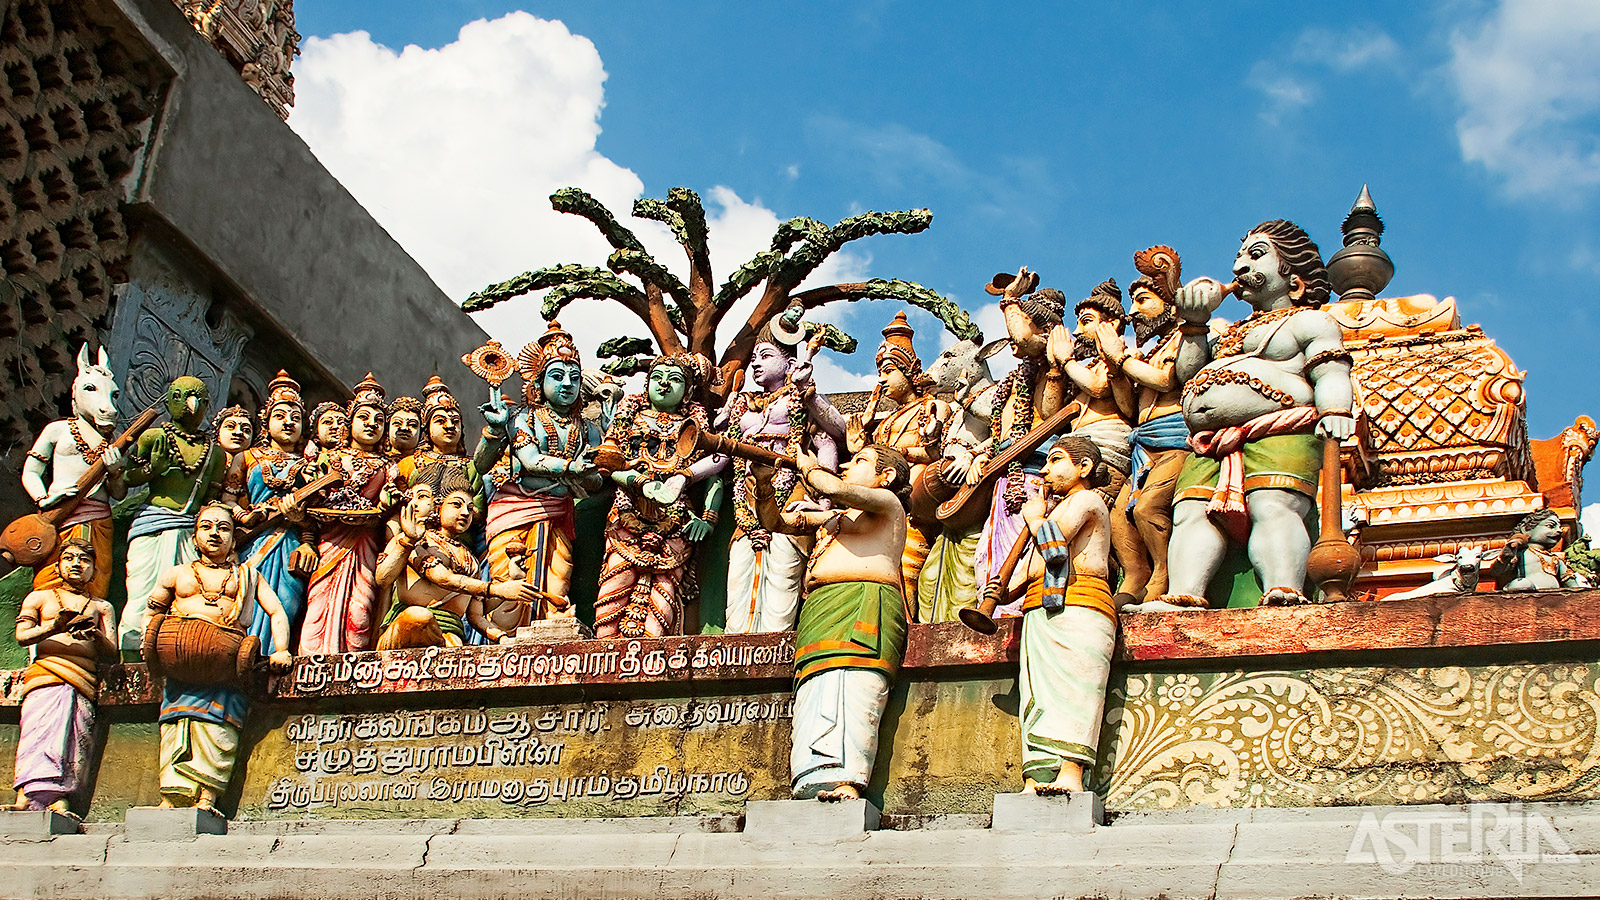 De reis staat in Yogyakarta dat veel oude tradities en gewoonten wist te behouden